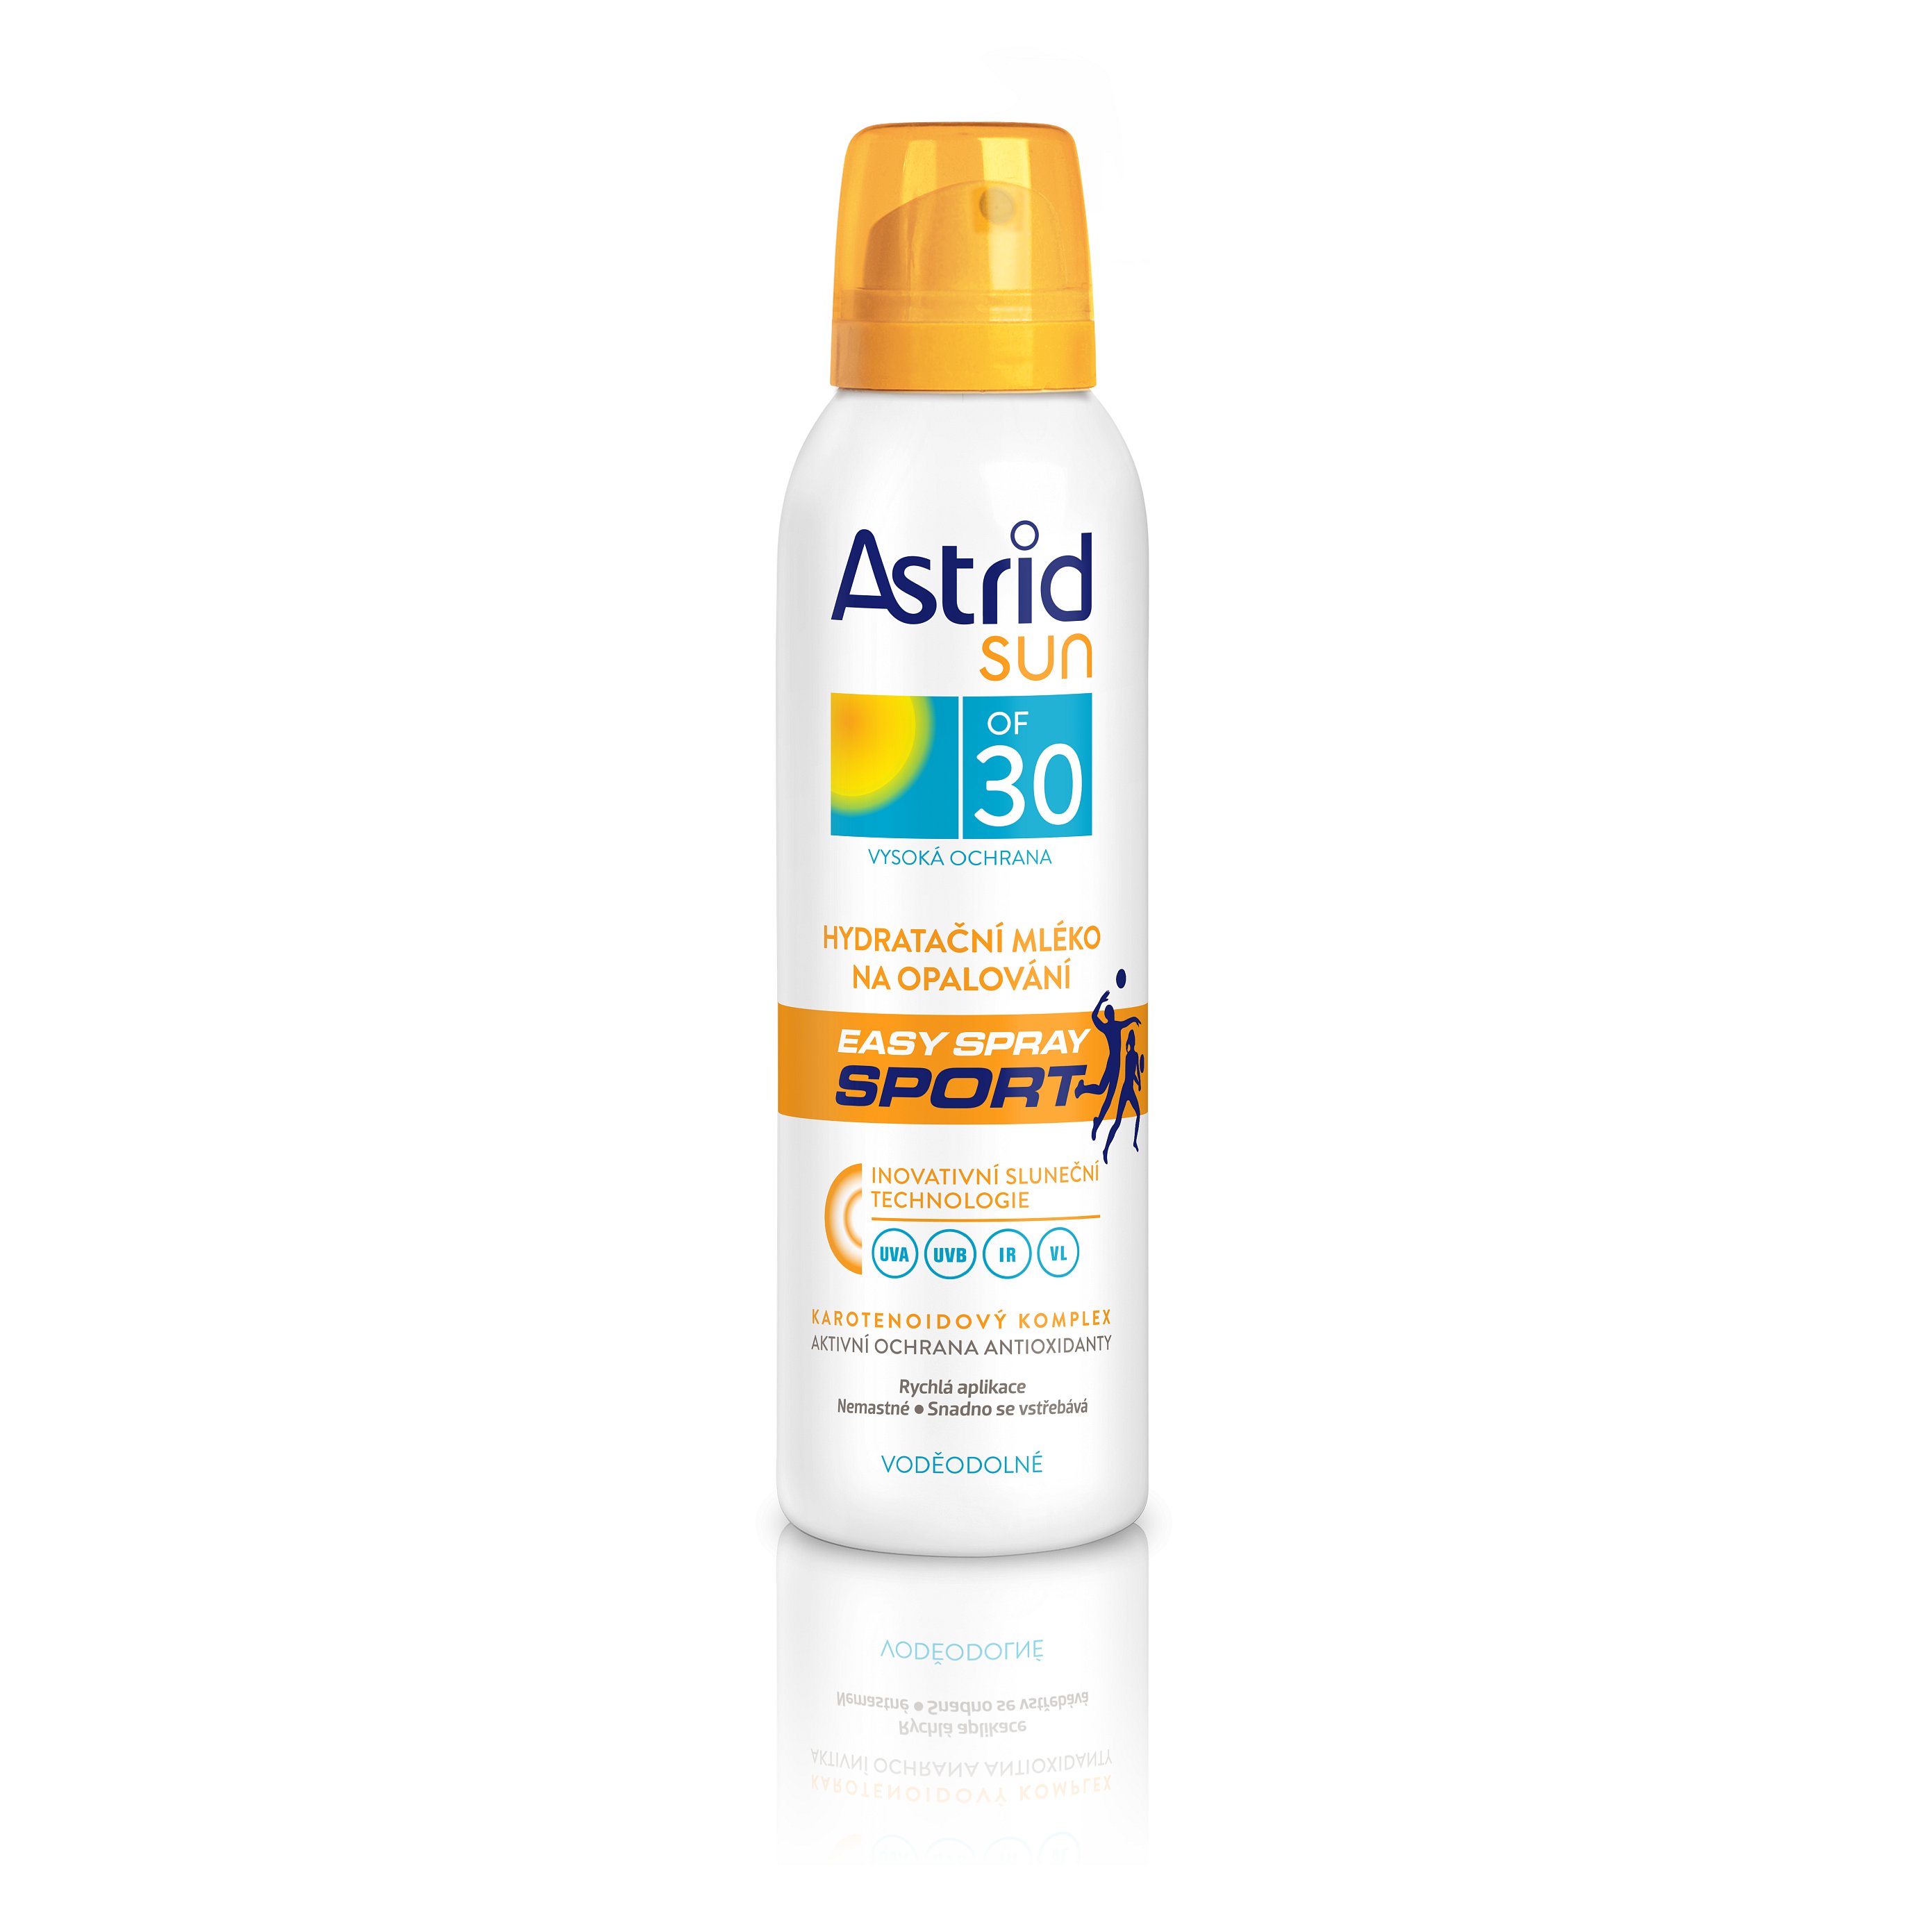 ASTRID SUN Hydratační mléko na opalování easy spray SPORT OF 30 150 ml